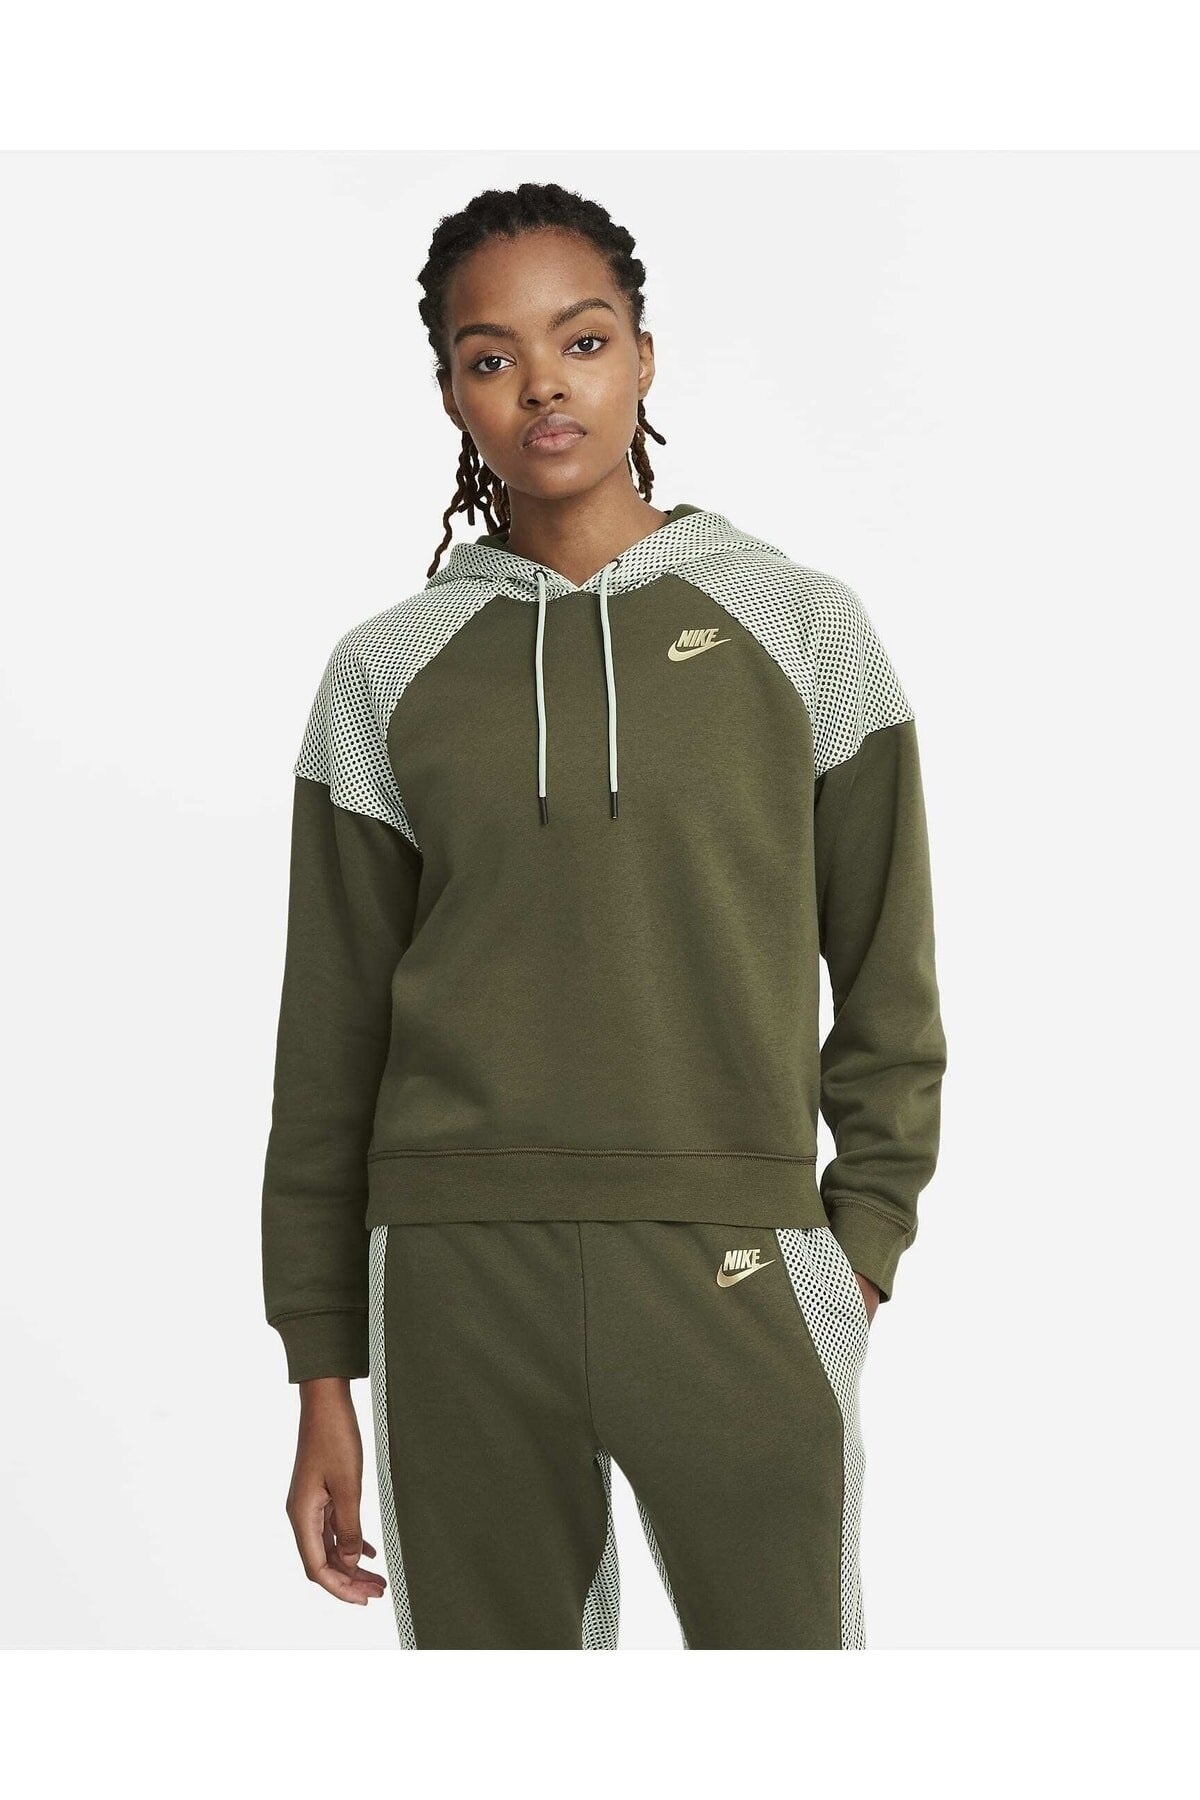 Nike Serena Williams Design Crew Sweatshirt Lütfen Açıklamalarda Ölçülere Bakınız